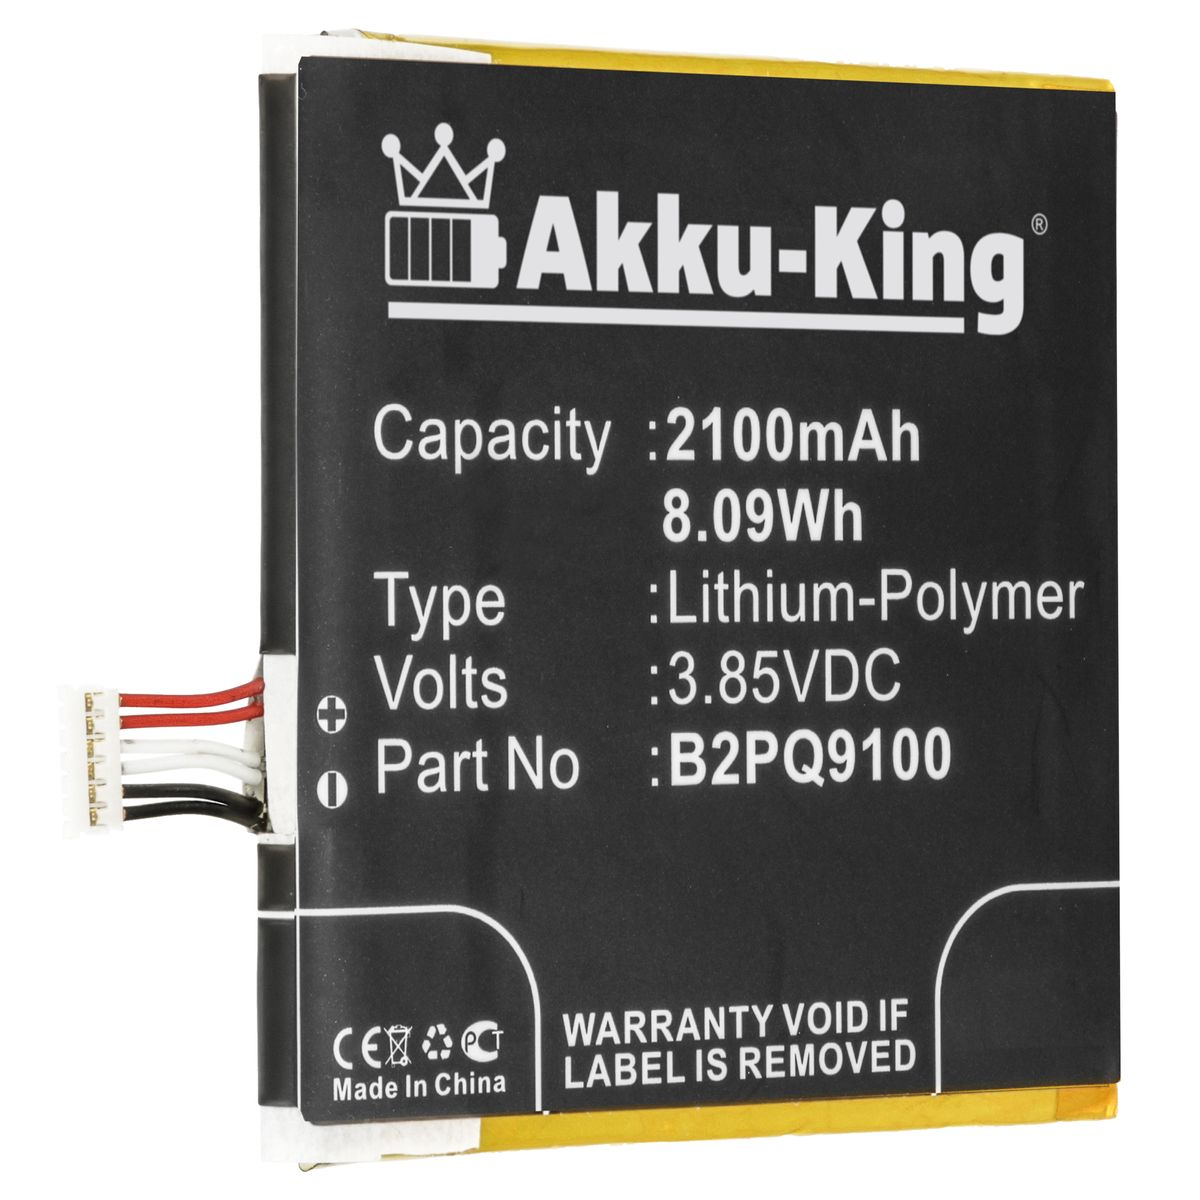 AKKU-KING Akku kompatibel mit HTC 3.6 Li-Polymer B2PQ9100 Volt, Handy-Akku, 2100mAh